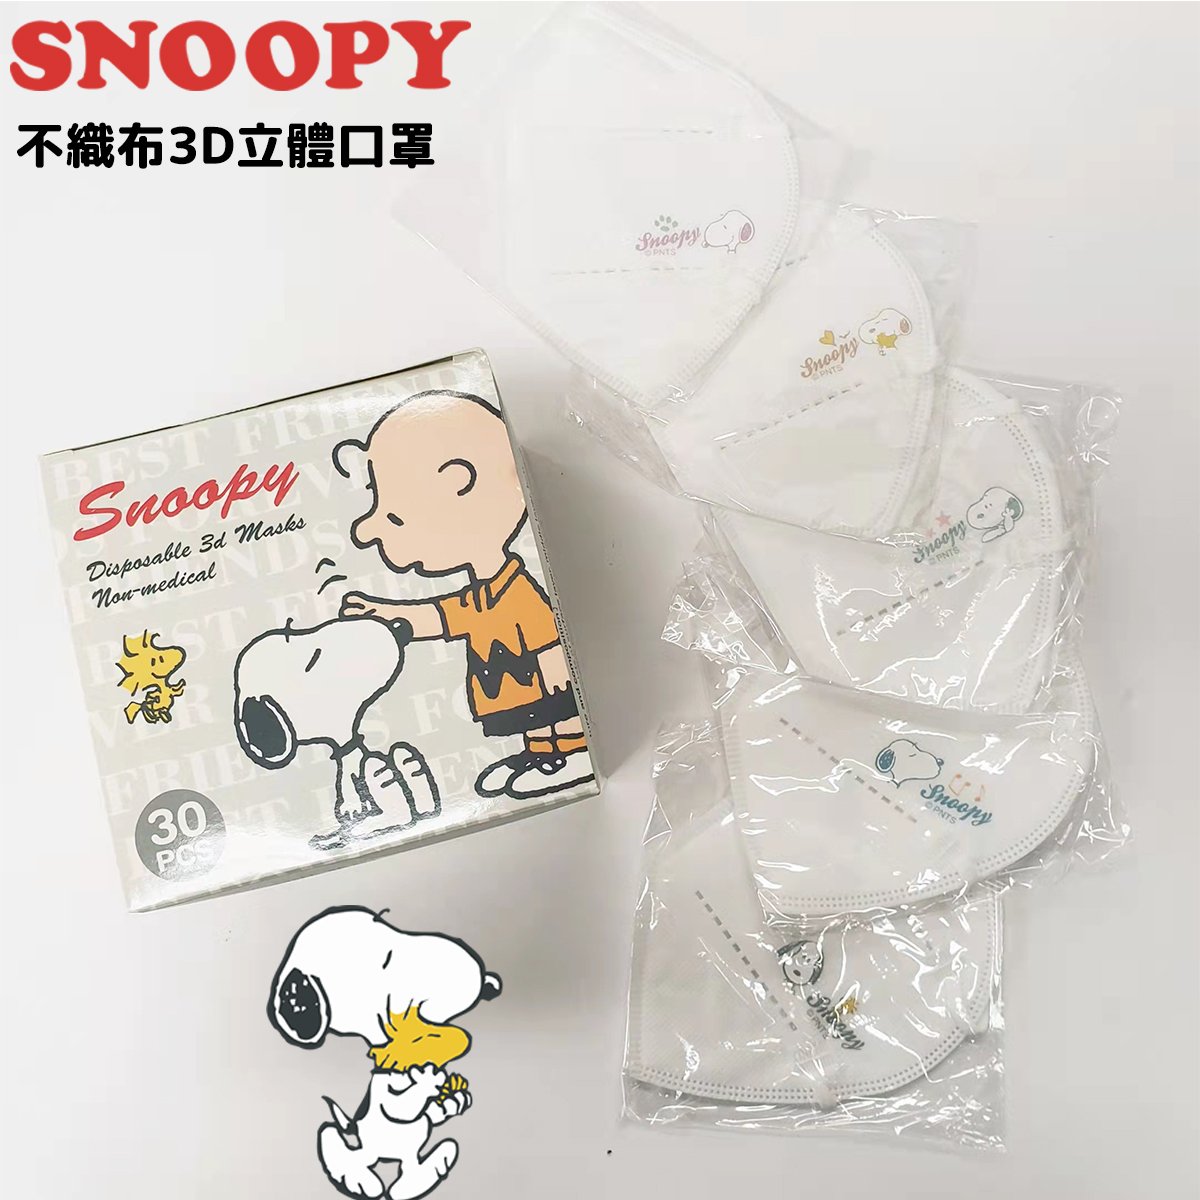 Mask - Snoopy Disposable 3D Masks 2022 L Size Q5x6 (30pcs) (Japan Edition)